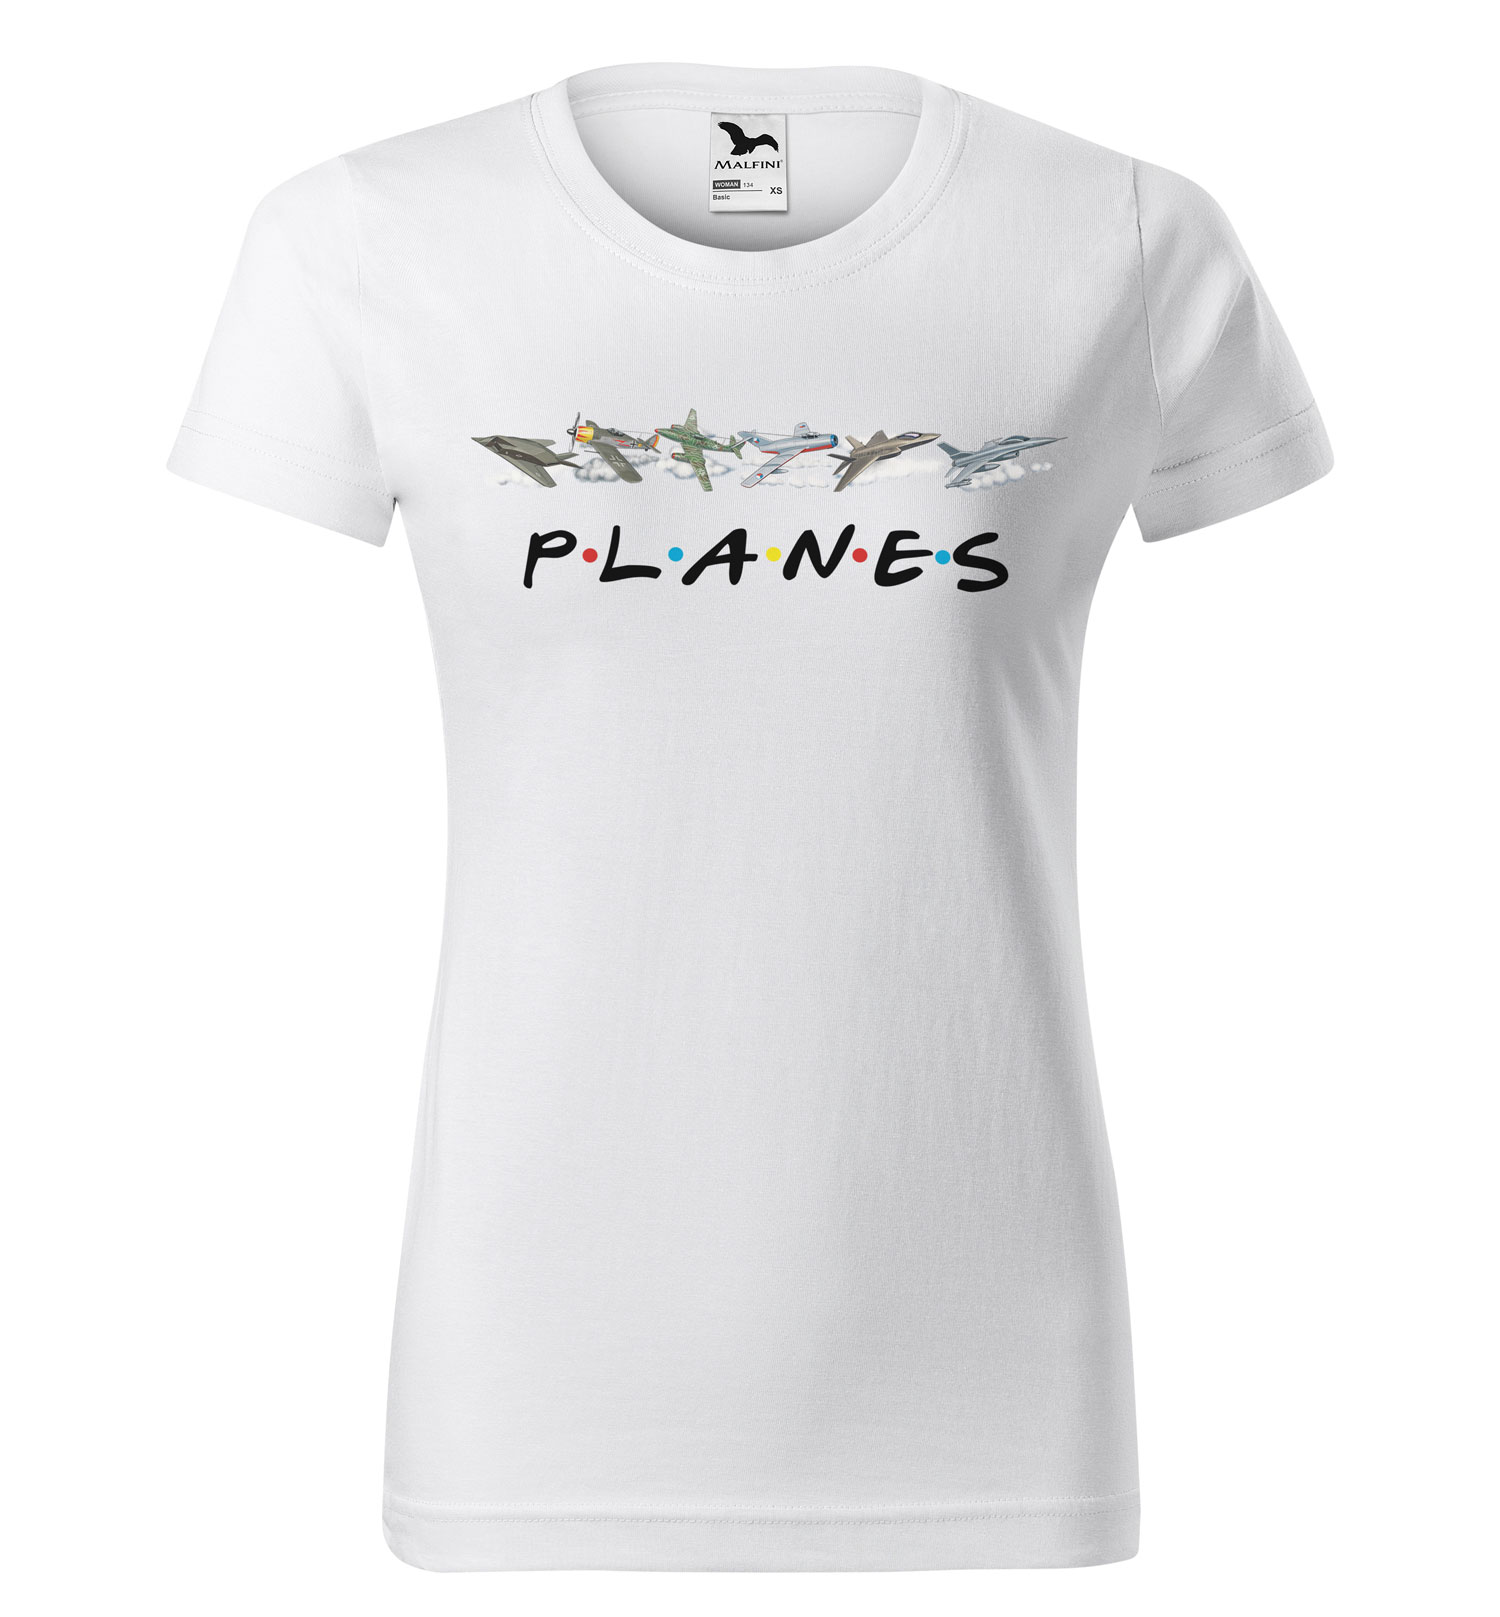 Tričko Planes (Velikost: L, Typ: pro ženy, Barva trička: Bílá)